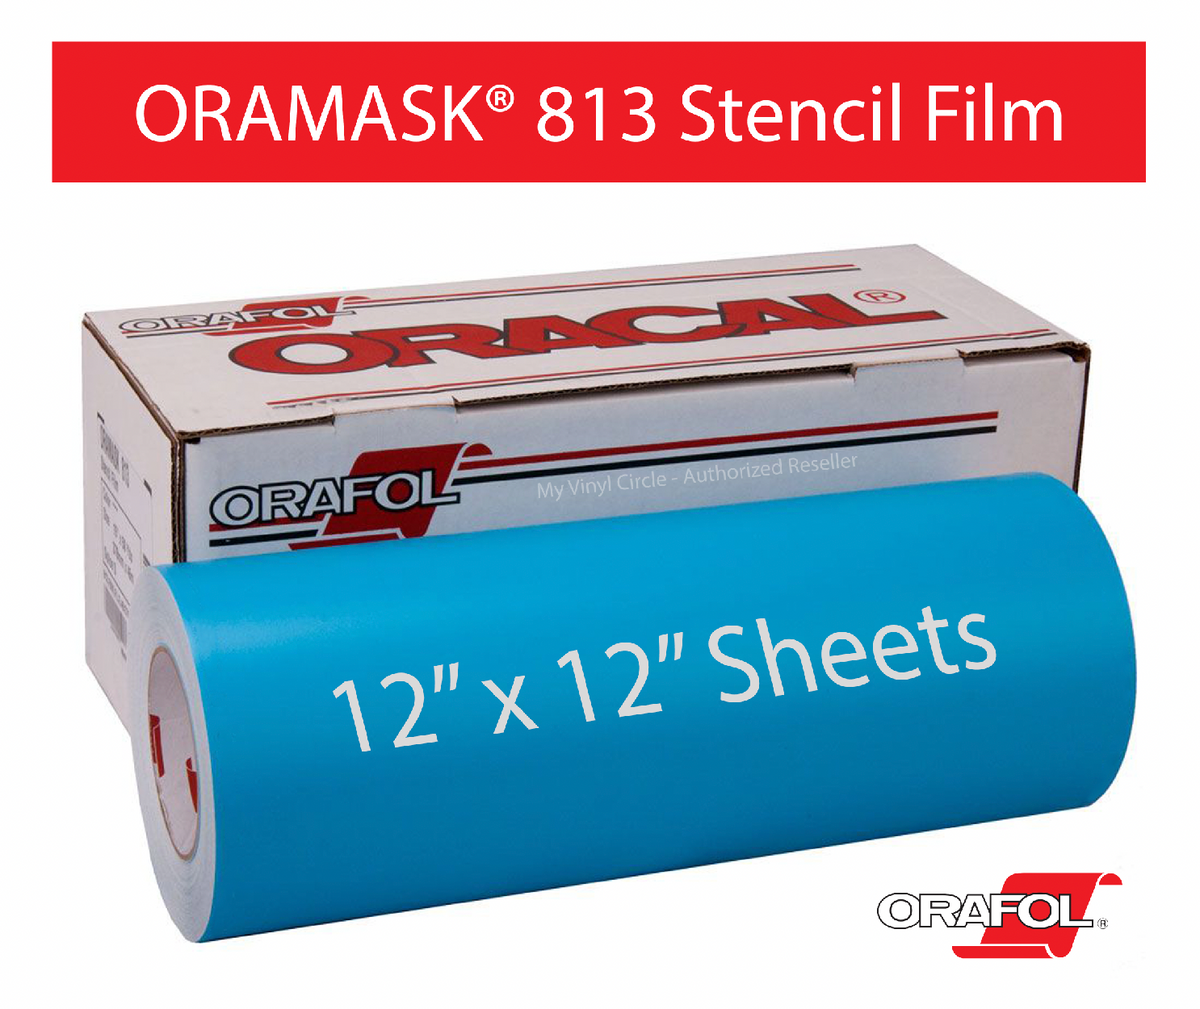 Oramask 813 Stencil Film 12x5yd. Roll - Expressions Vinyl